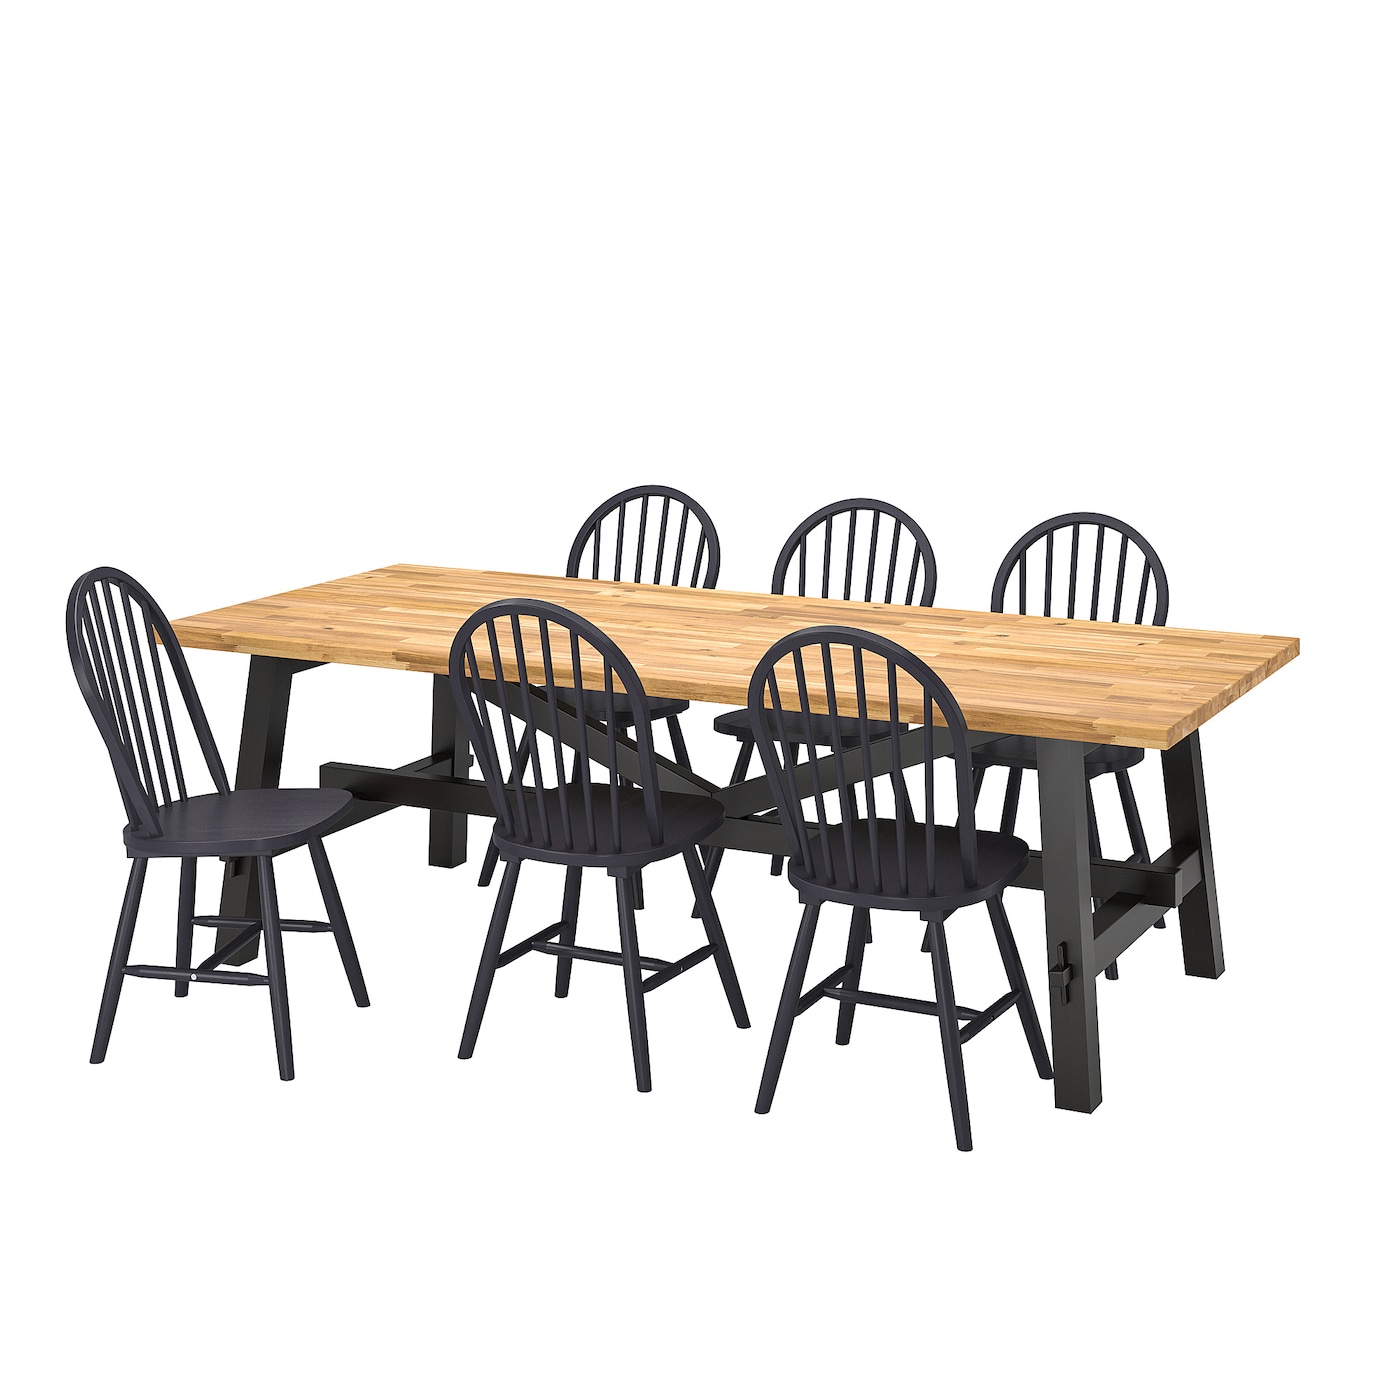 Стол и 6 стула - SKOGSTA / SKOGSTA IKEA/ СКОГСТА ИКЕА, 235х74  см,  под беленый дуб / черный